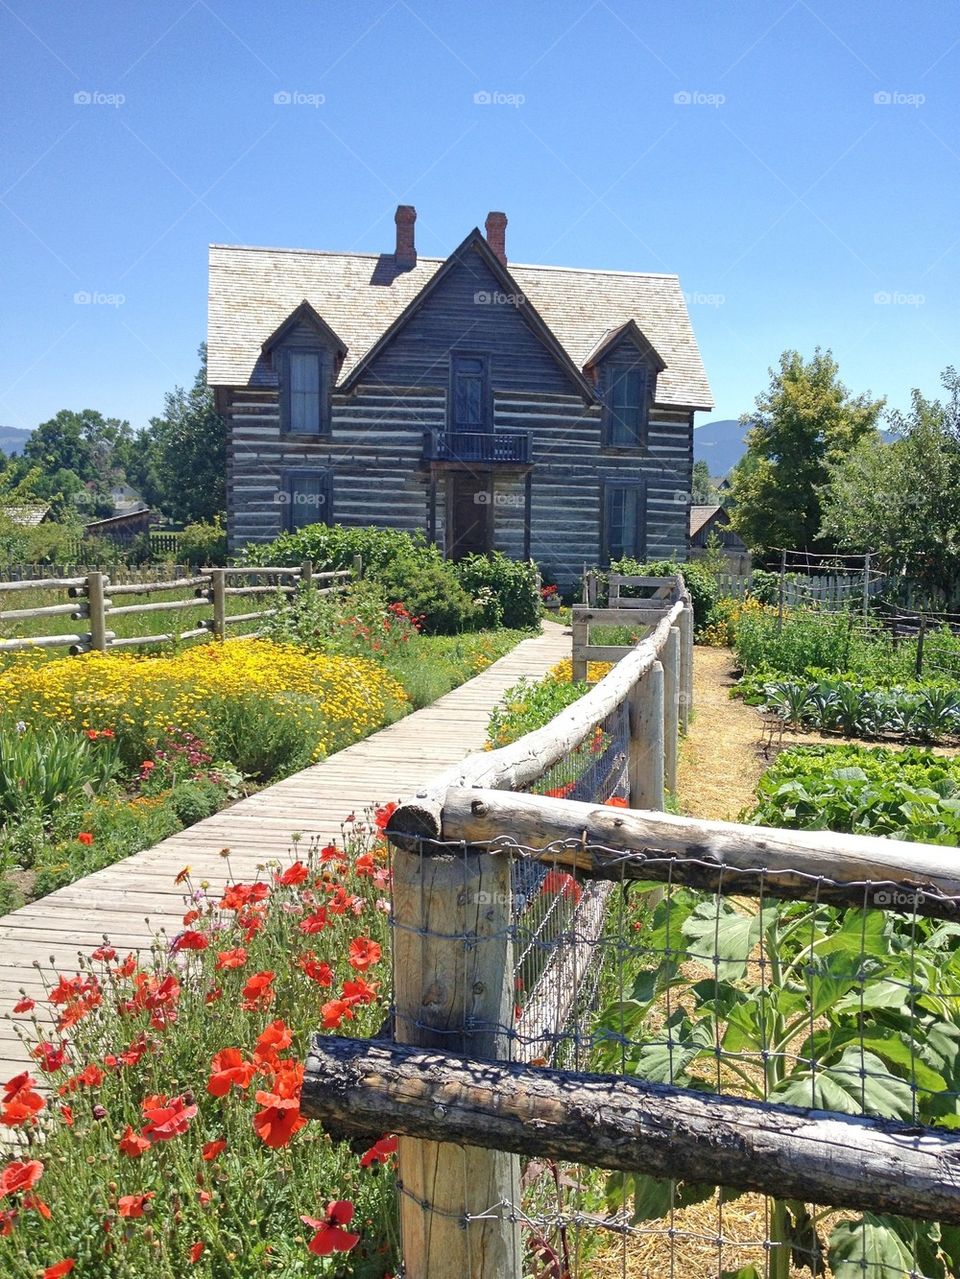 Original Farm House and Flowers